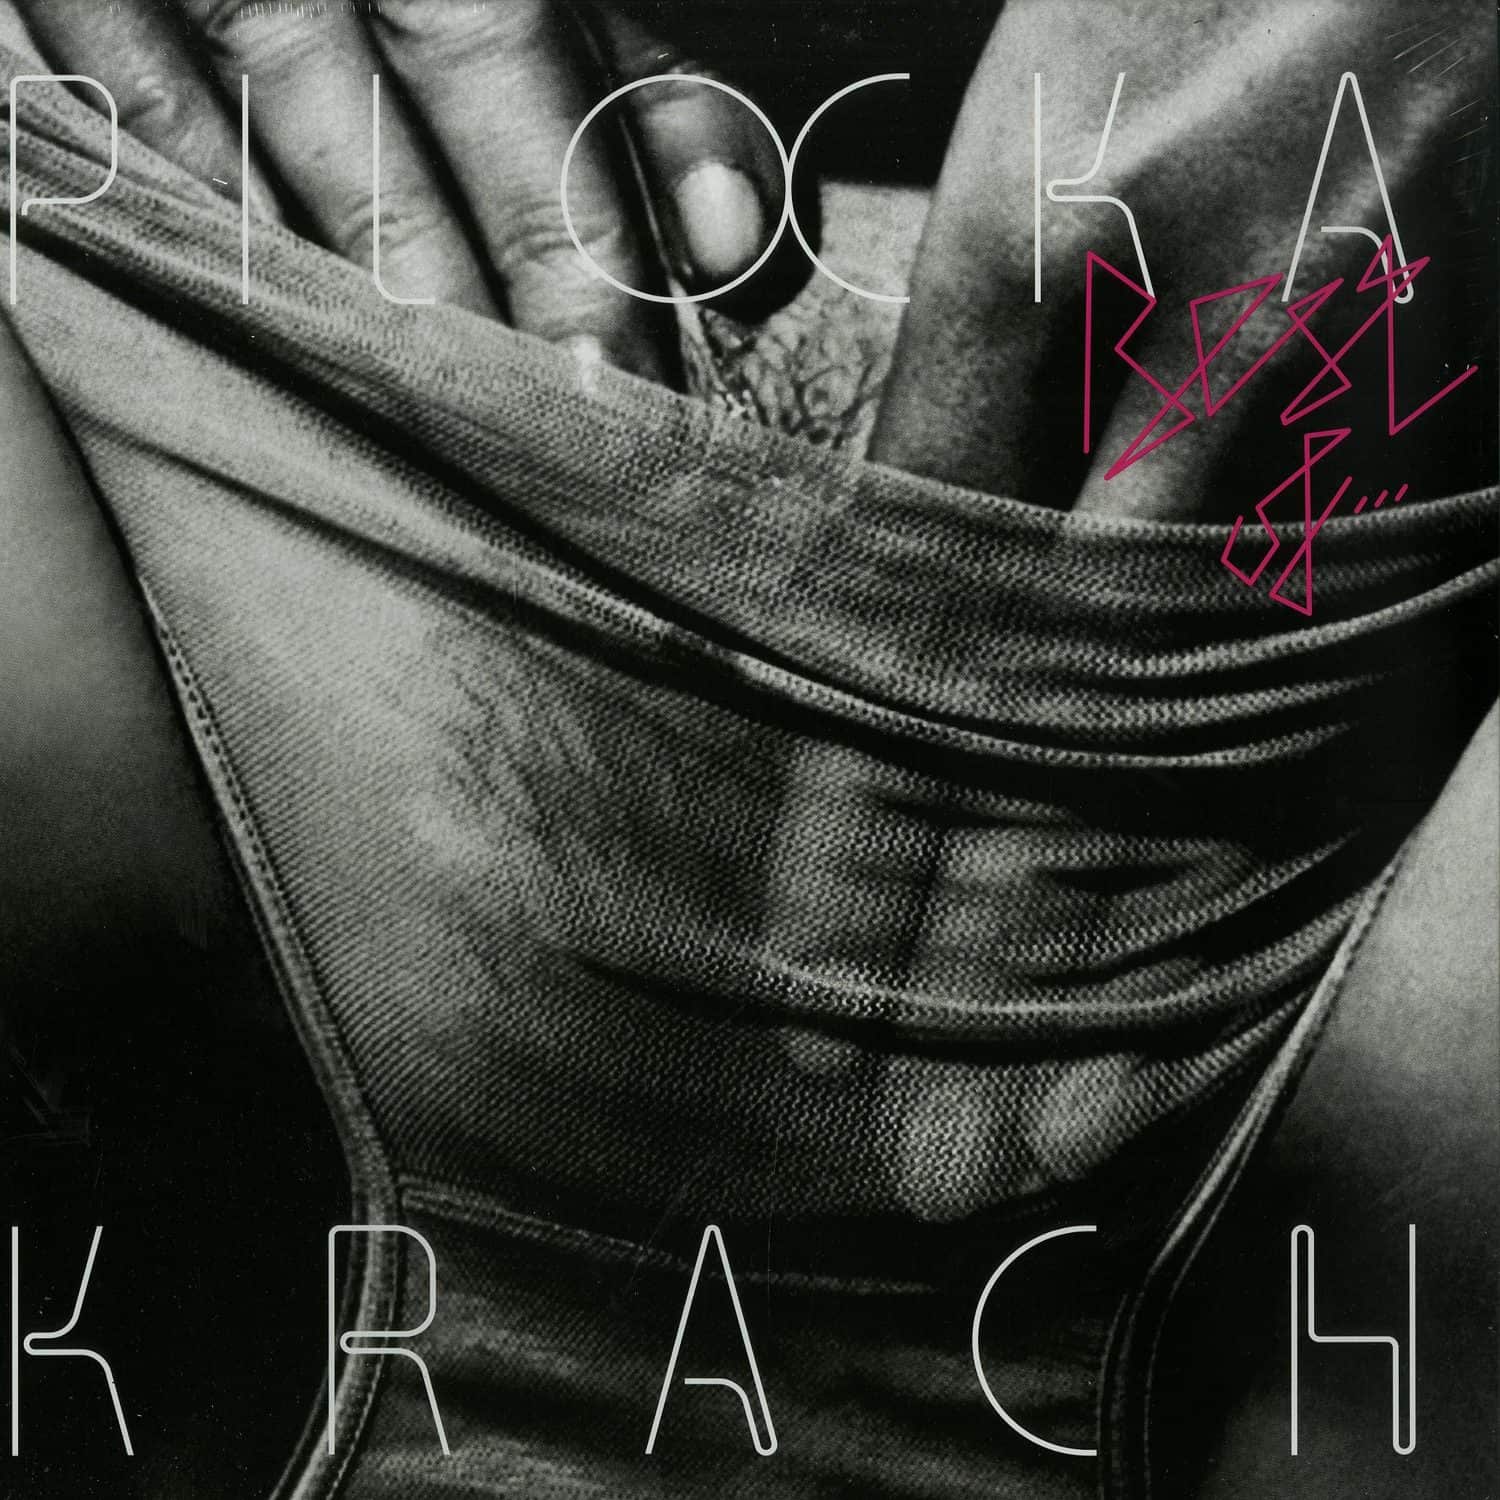 Pilocka Krach - BEST OF 